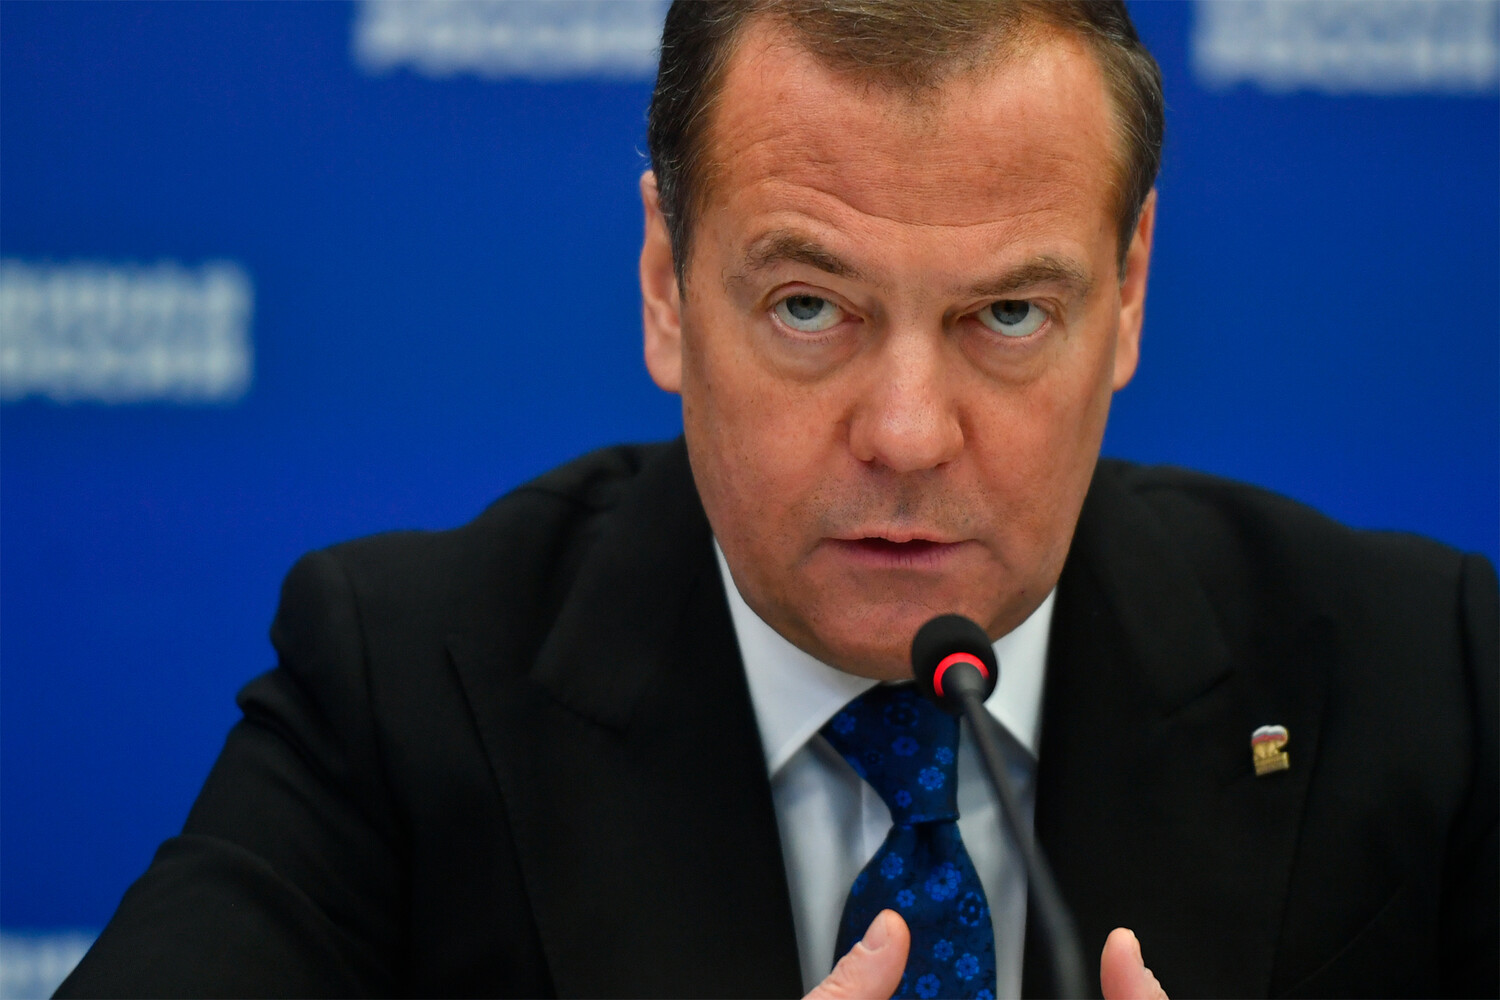 Медведев выразил уверенность в победе России в спецоперации на Украине